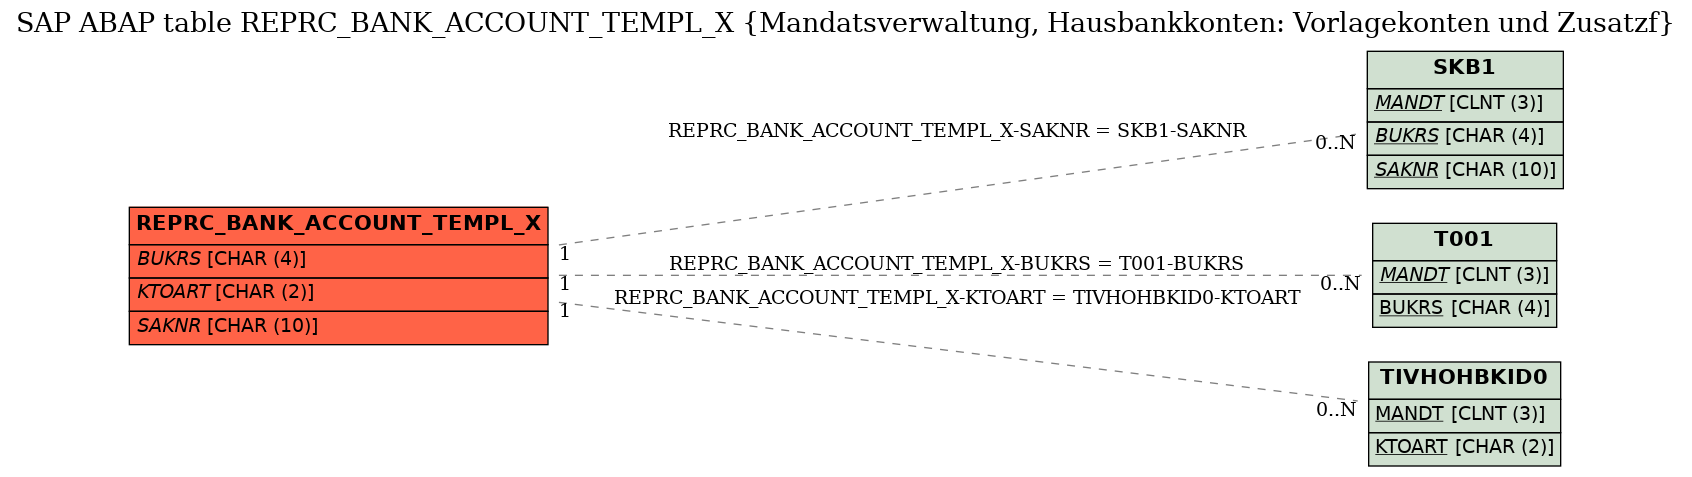 E-R Diagram for table REPRC_BANK_ACCOUNT_TEMPL_X (Mandatsverwaltung, Hausbankkonten: Vorlagekonten und Zusatzf)